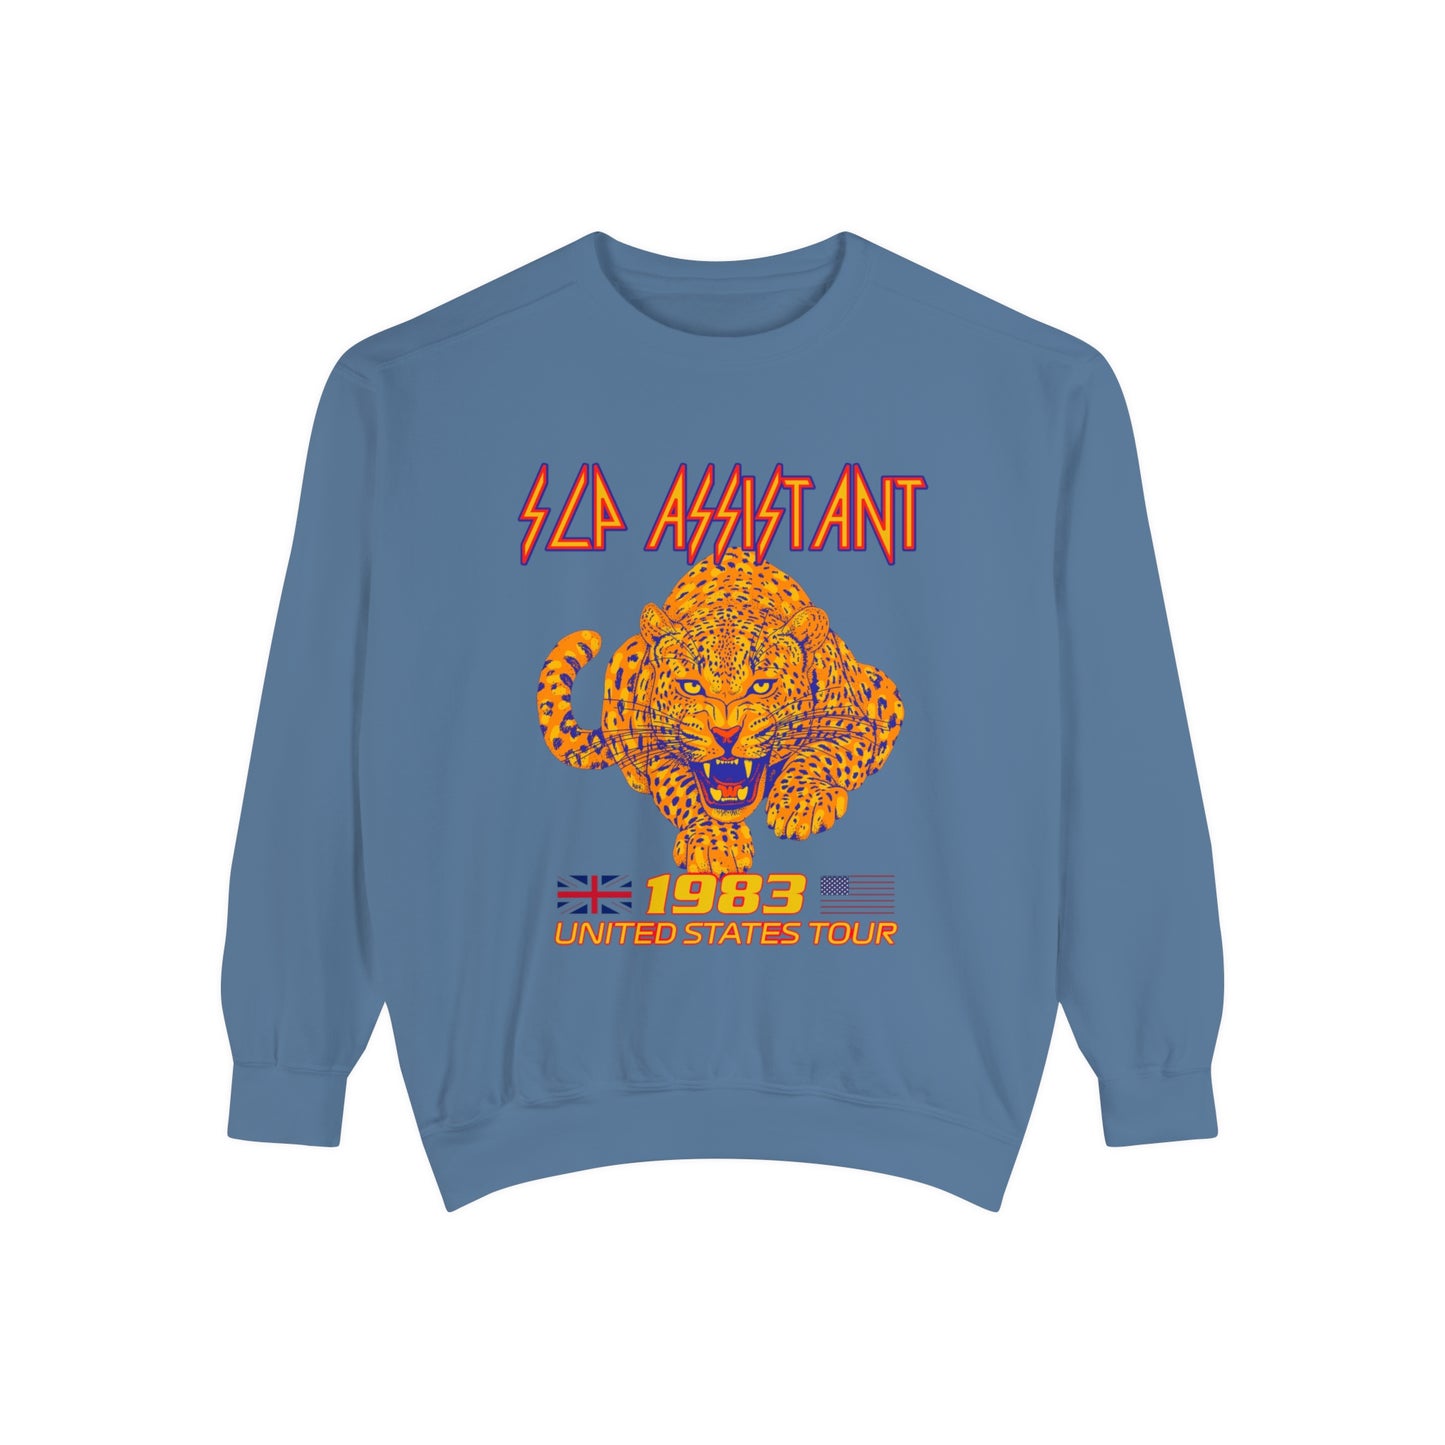 Def SLP Assistant Band Inspired Comfort Colors Sweatshirt